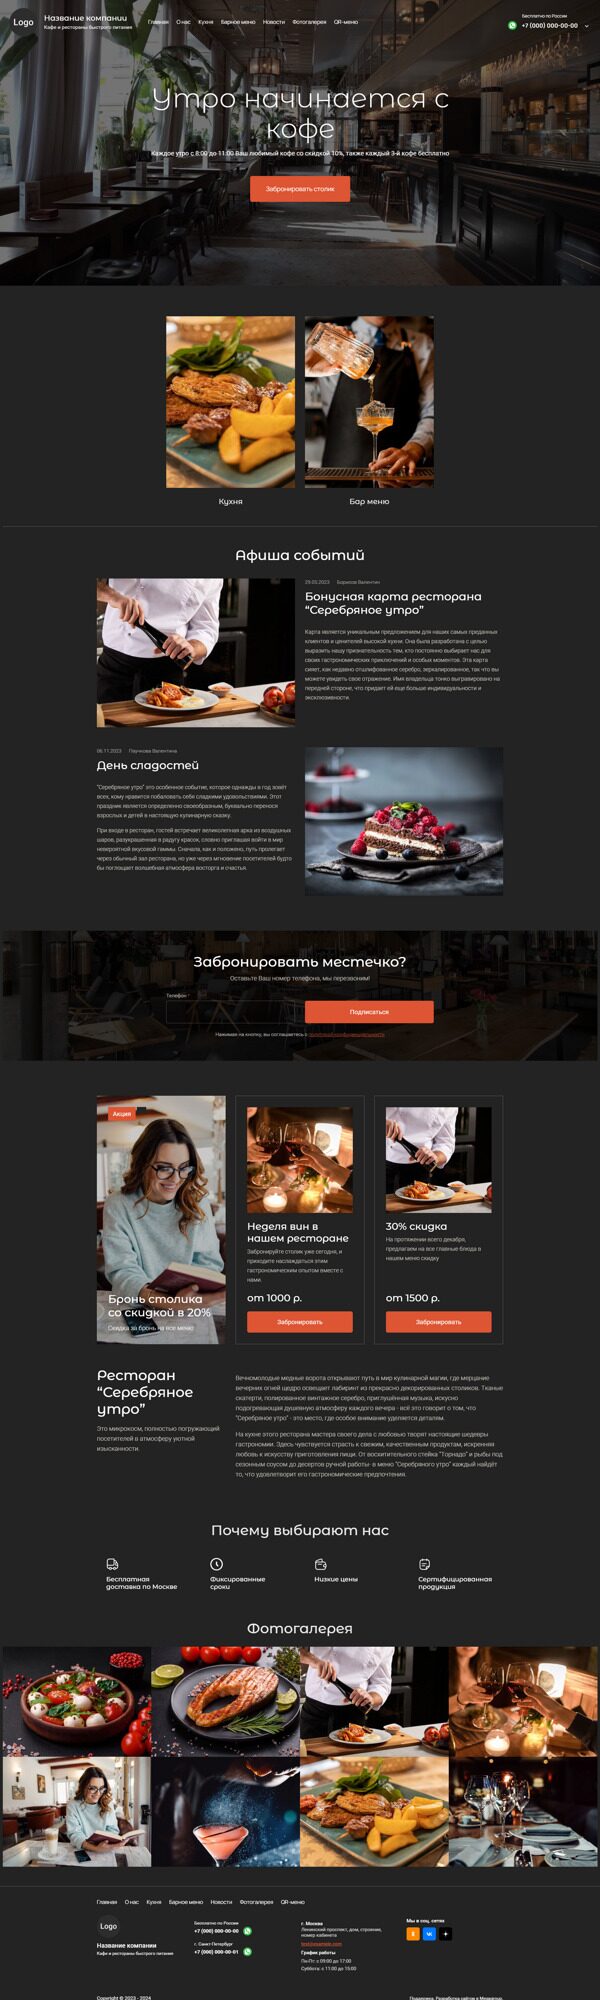 Готовый Сайт-Бизнес № 5449806 - Кафе и рестораны быстрого питания (Десктопная версия)